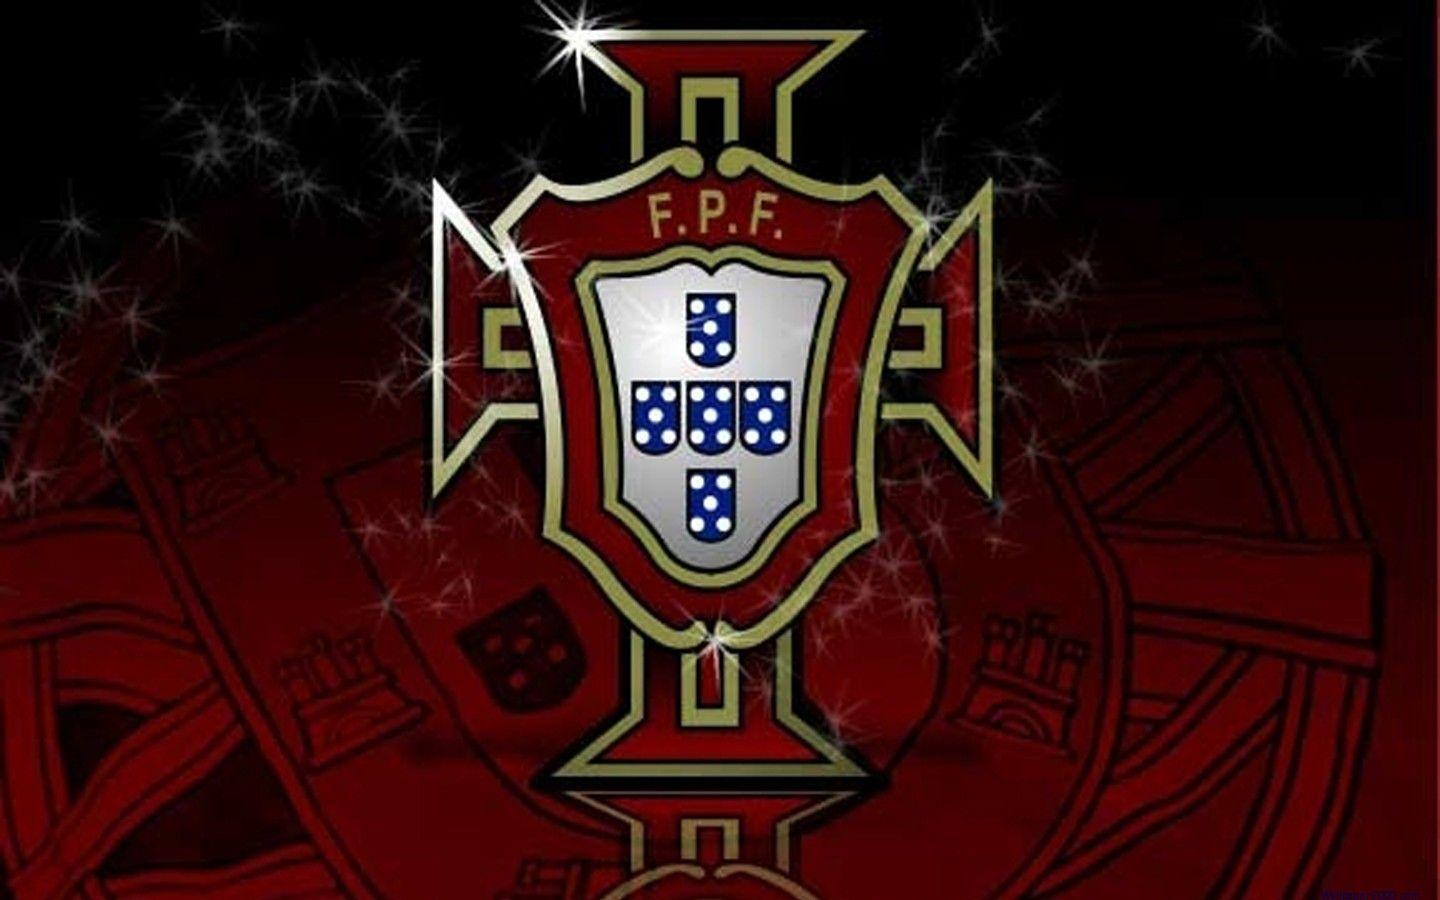 UEFA Euro Portugal